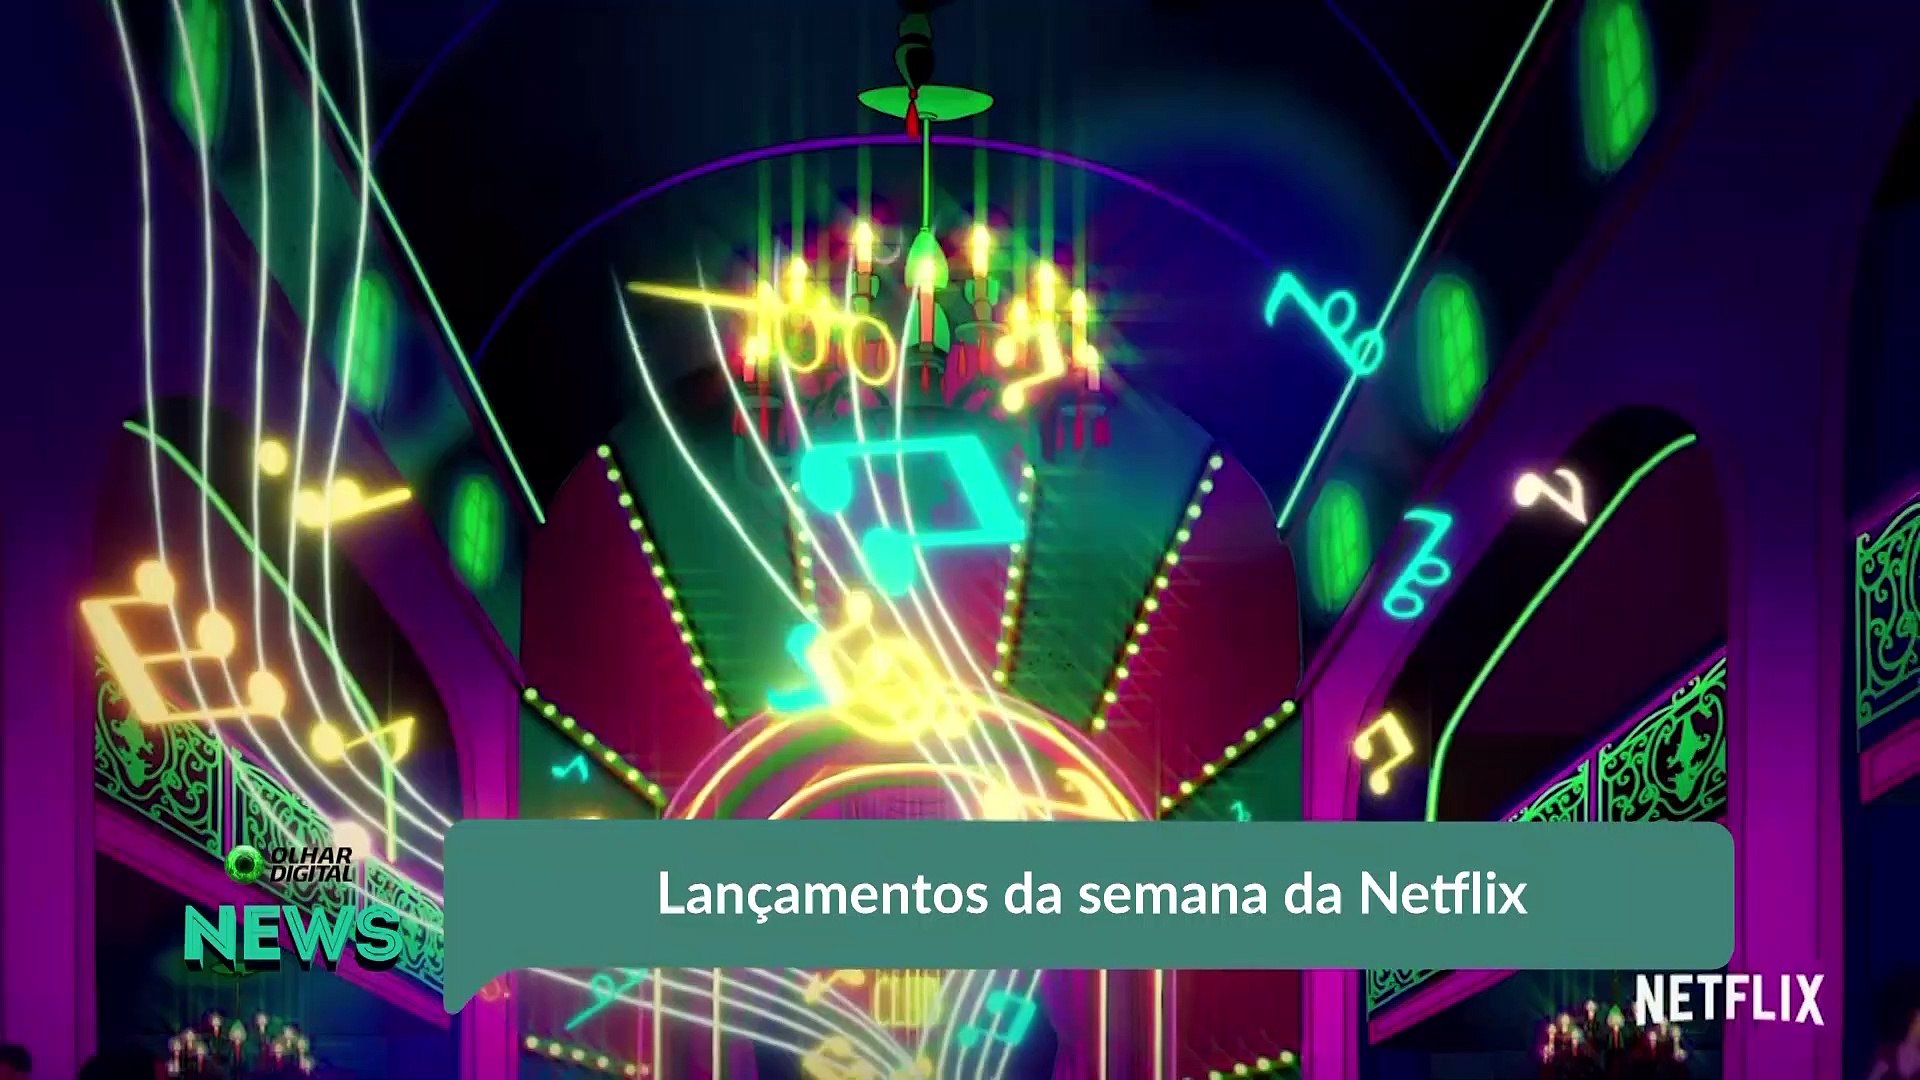 Lançamentos da Netflix desta semana (04 a 10/01) - Olhar Digital